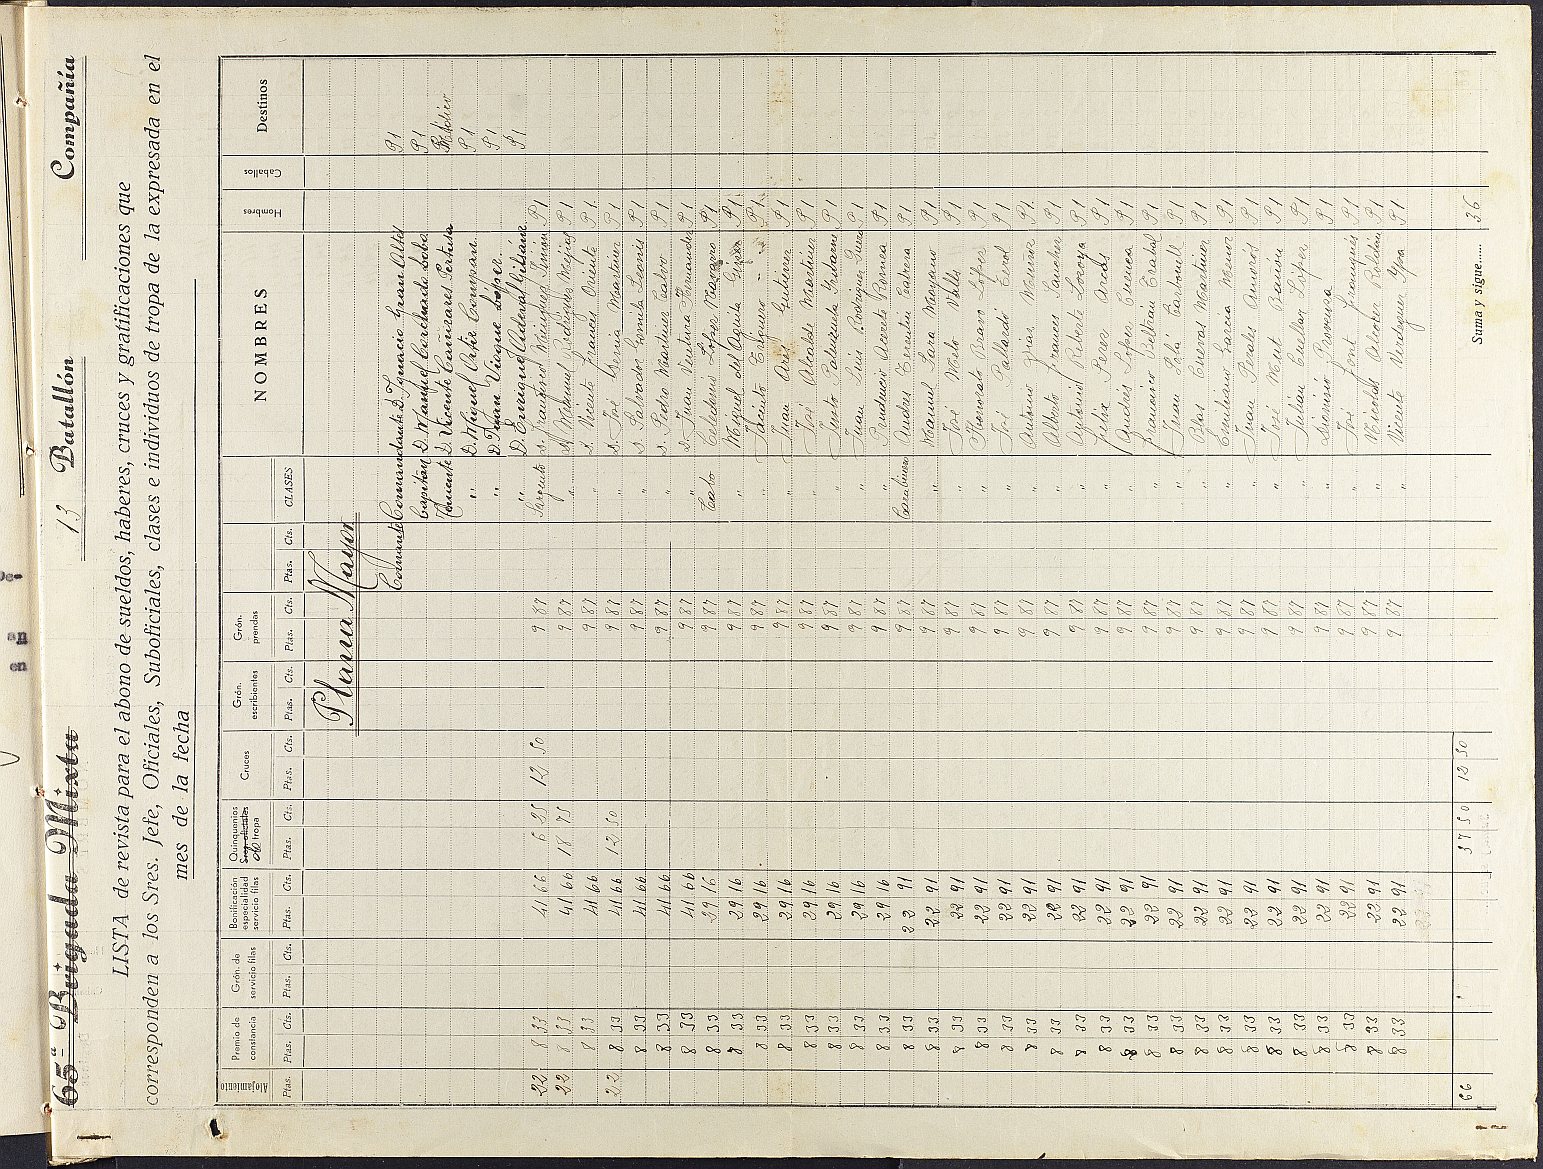 Mandamiento de pago nº 87 relativo a la nómina del mes de marzo de 1937 de los Batallones nº 10, nº 11, nº 12, nº 13 y nº 23 del Cuerpo de Carabineros.